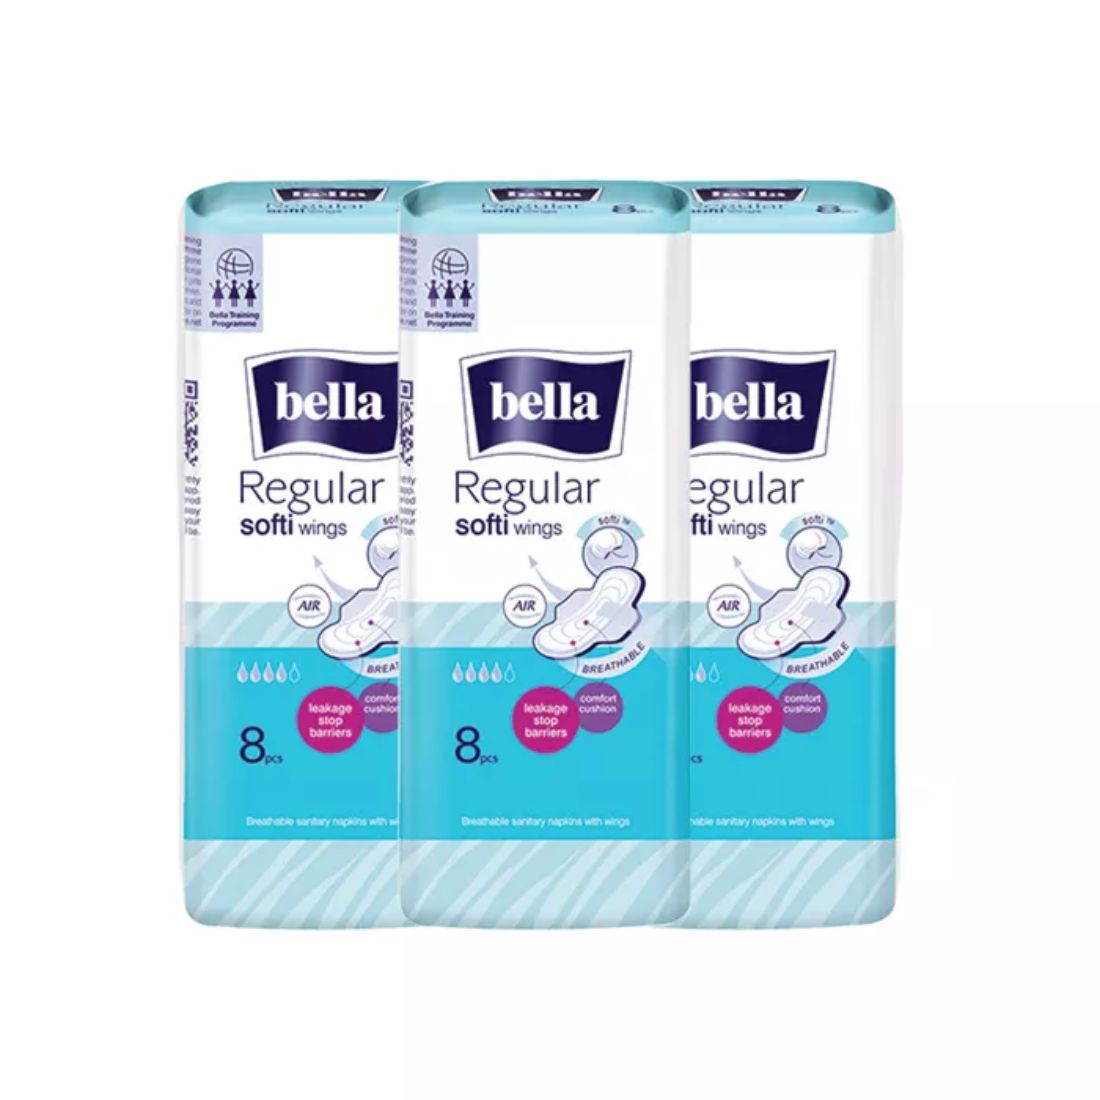 Bella Regular Softi Wings Classic Sanitary Napkins - 8Pcs (Pack of 3)